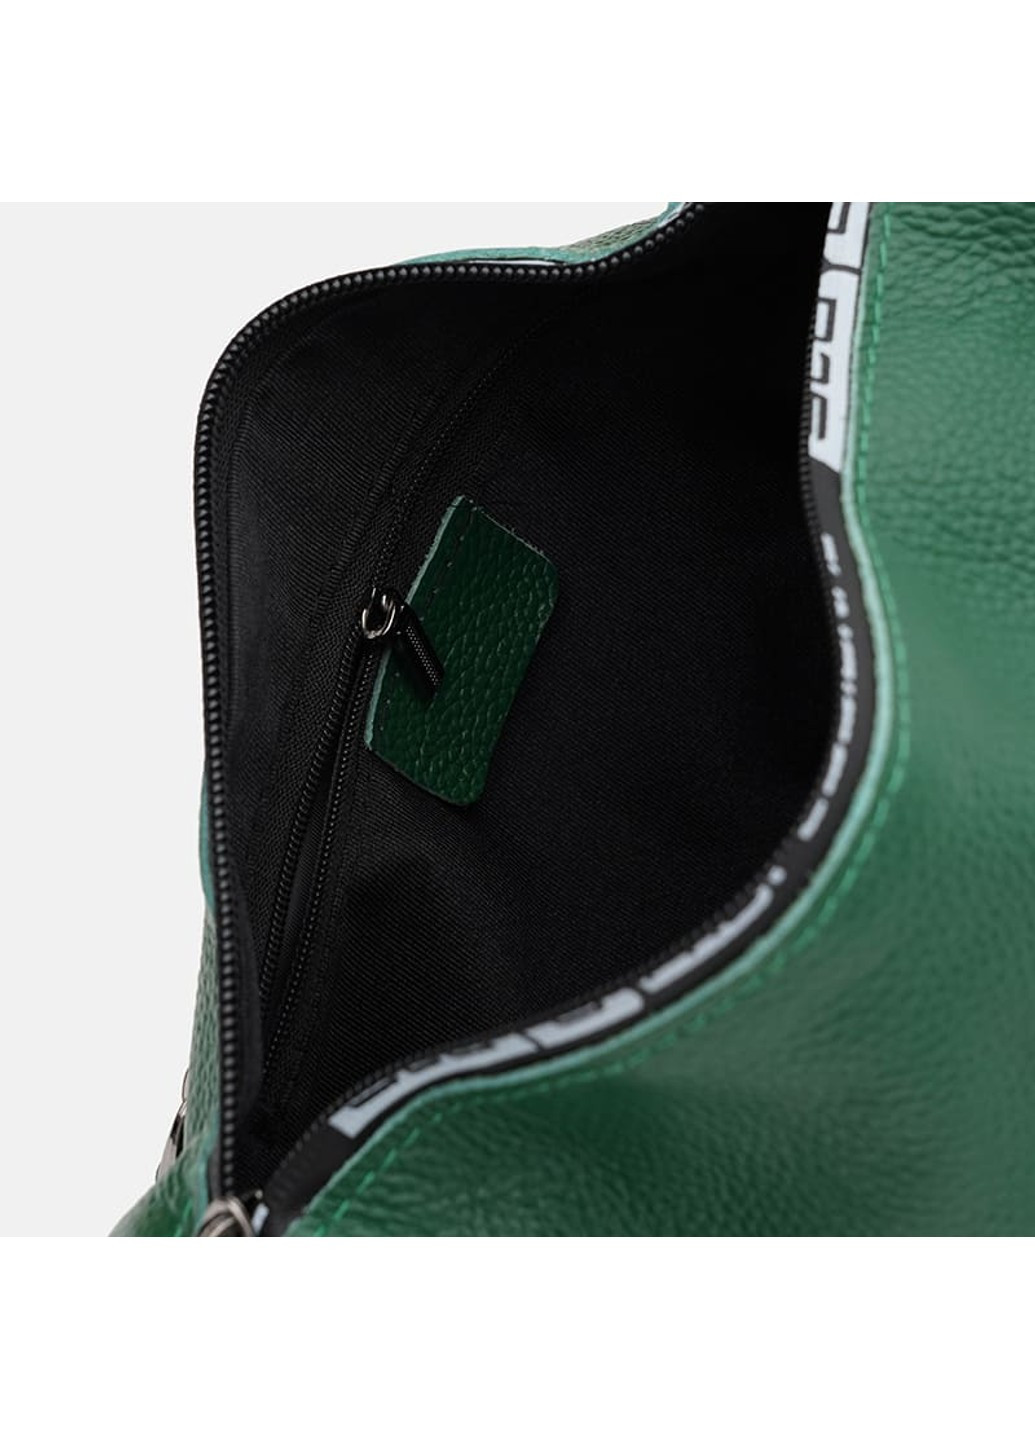 Женская кожаная сумка K18569gr-green Borsa Leather (266143211)